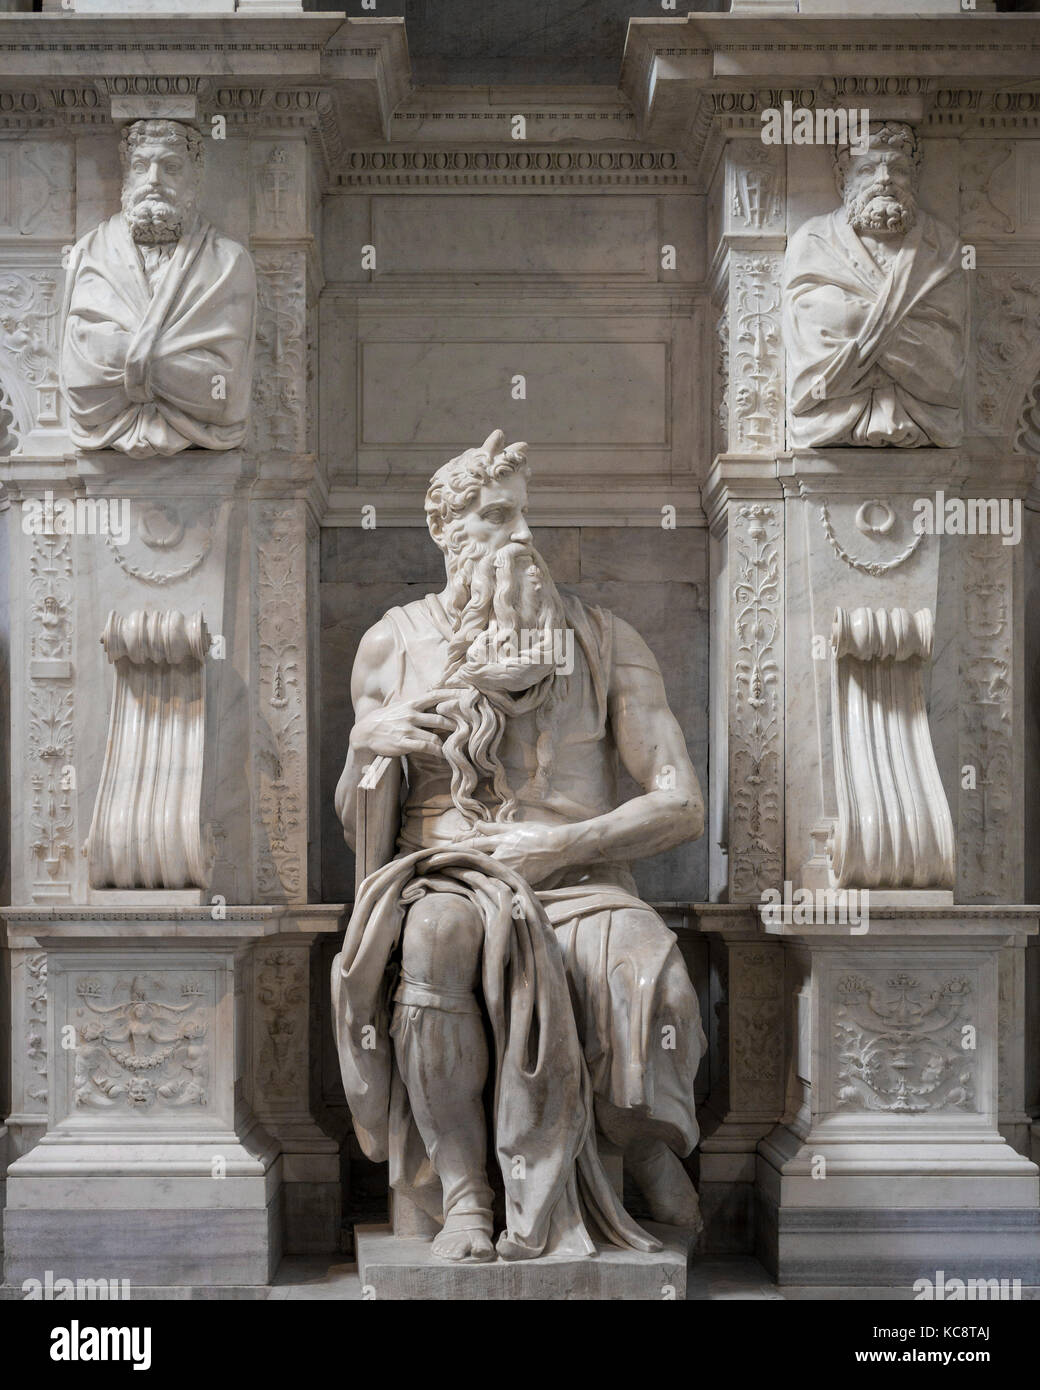 Roma. L'Italia. La scultura del Mosè di Michelangelo sulla tomba di papa Giulio II, Basilica di San Pietro in Vincoli. Mosè scultura (ca. 1513-1516) da Foto Stock